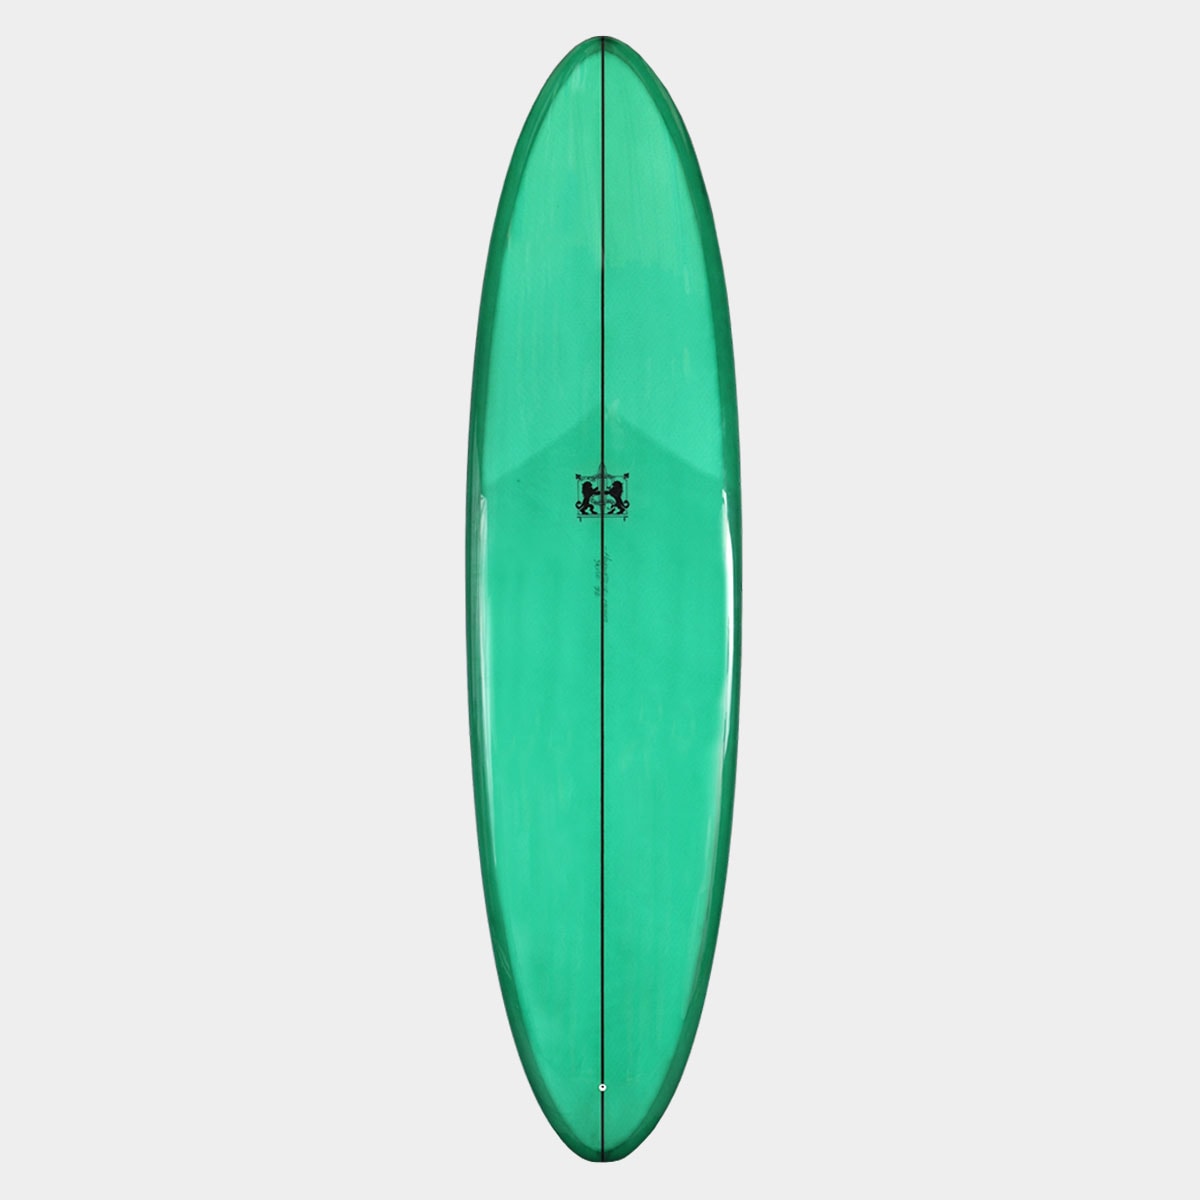 ラリーメイビル サーフボード エッグステイシー 7.6 ミッド サーフィン ミッドレングス シングルスタビ surfboards LARRY MABILE EGGSTACY 7'6 GREEN グリーン【jk2310】